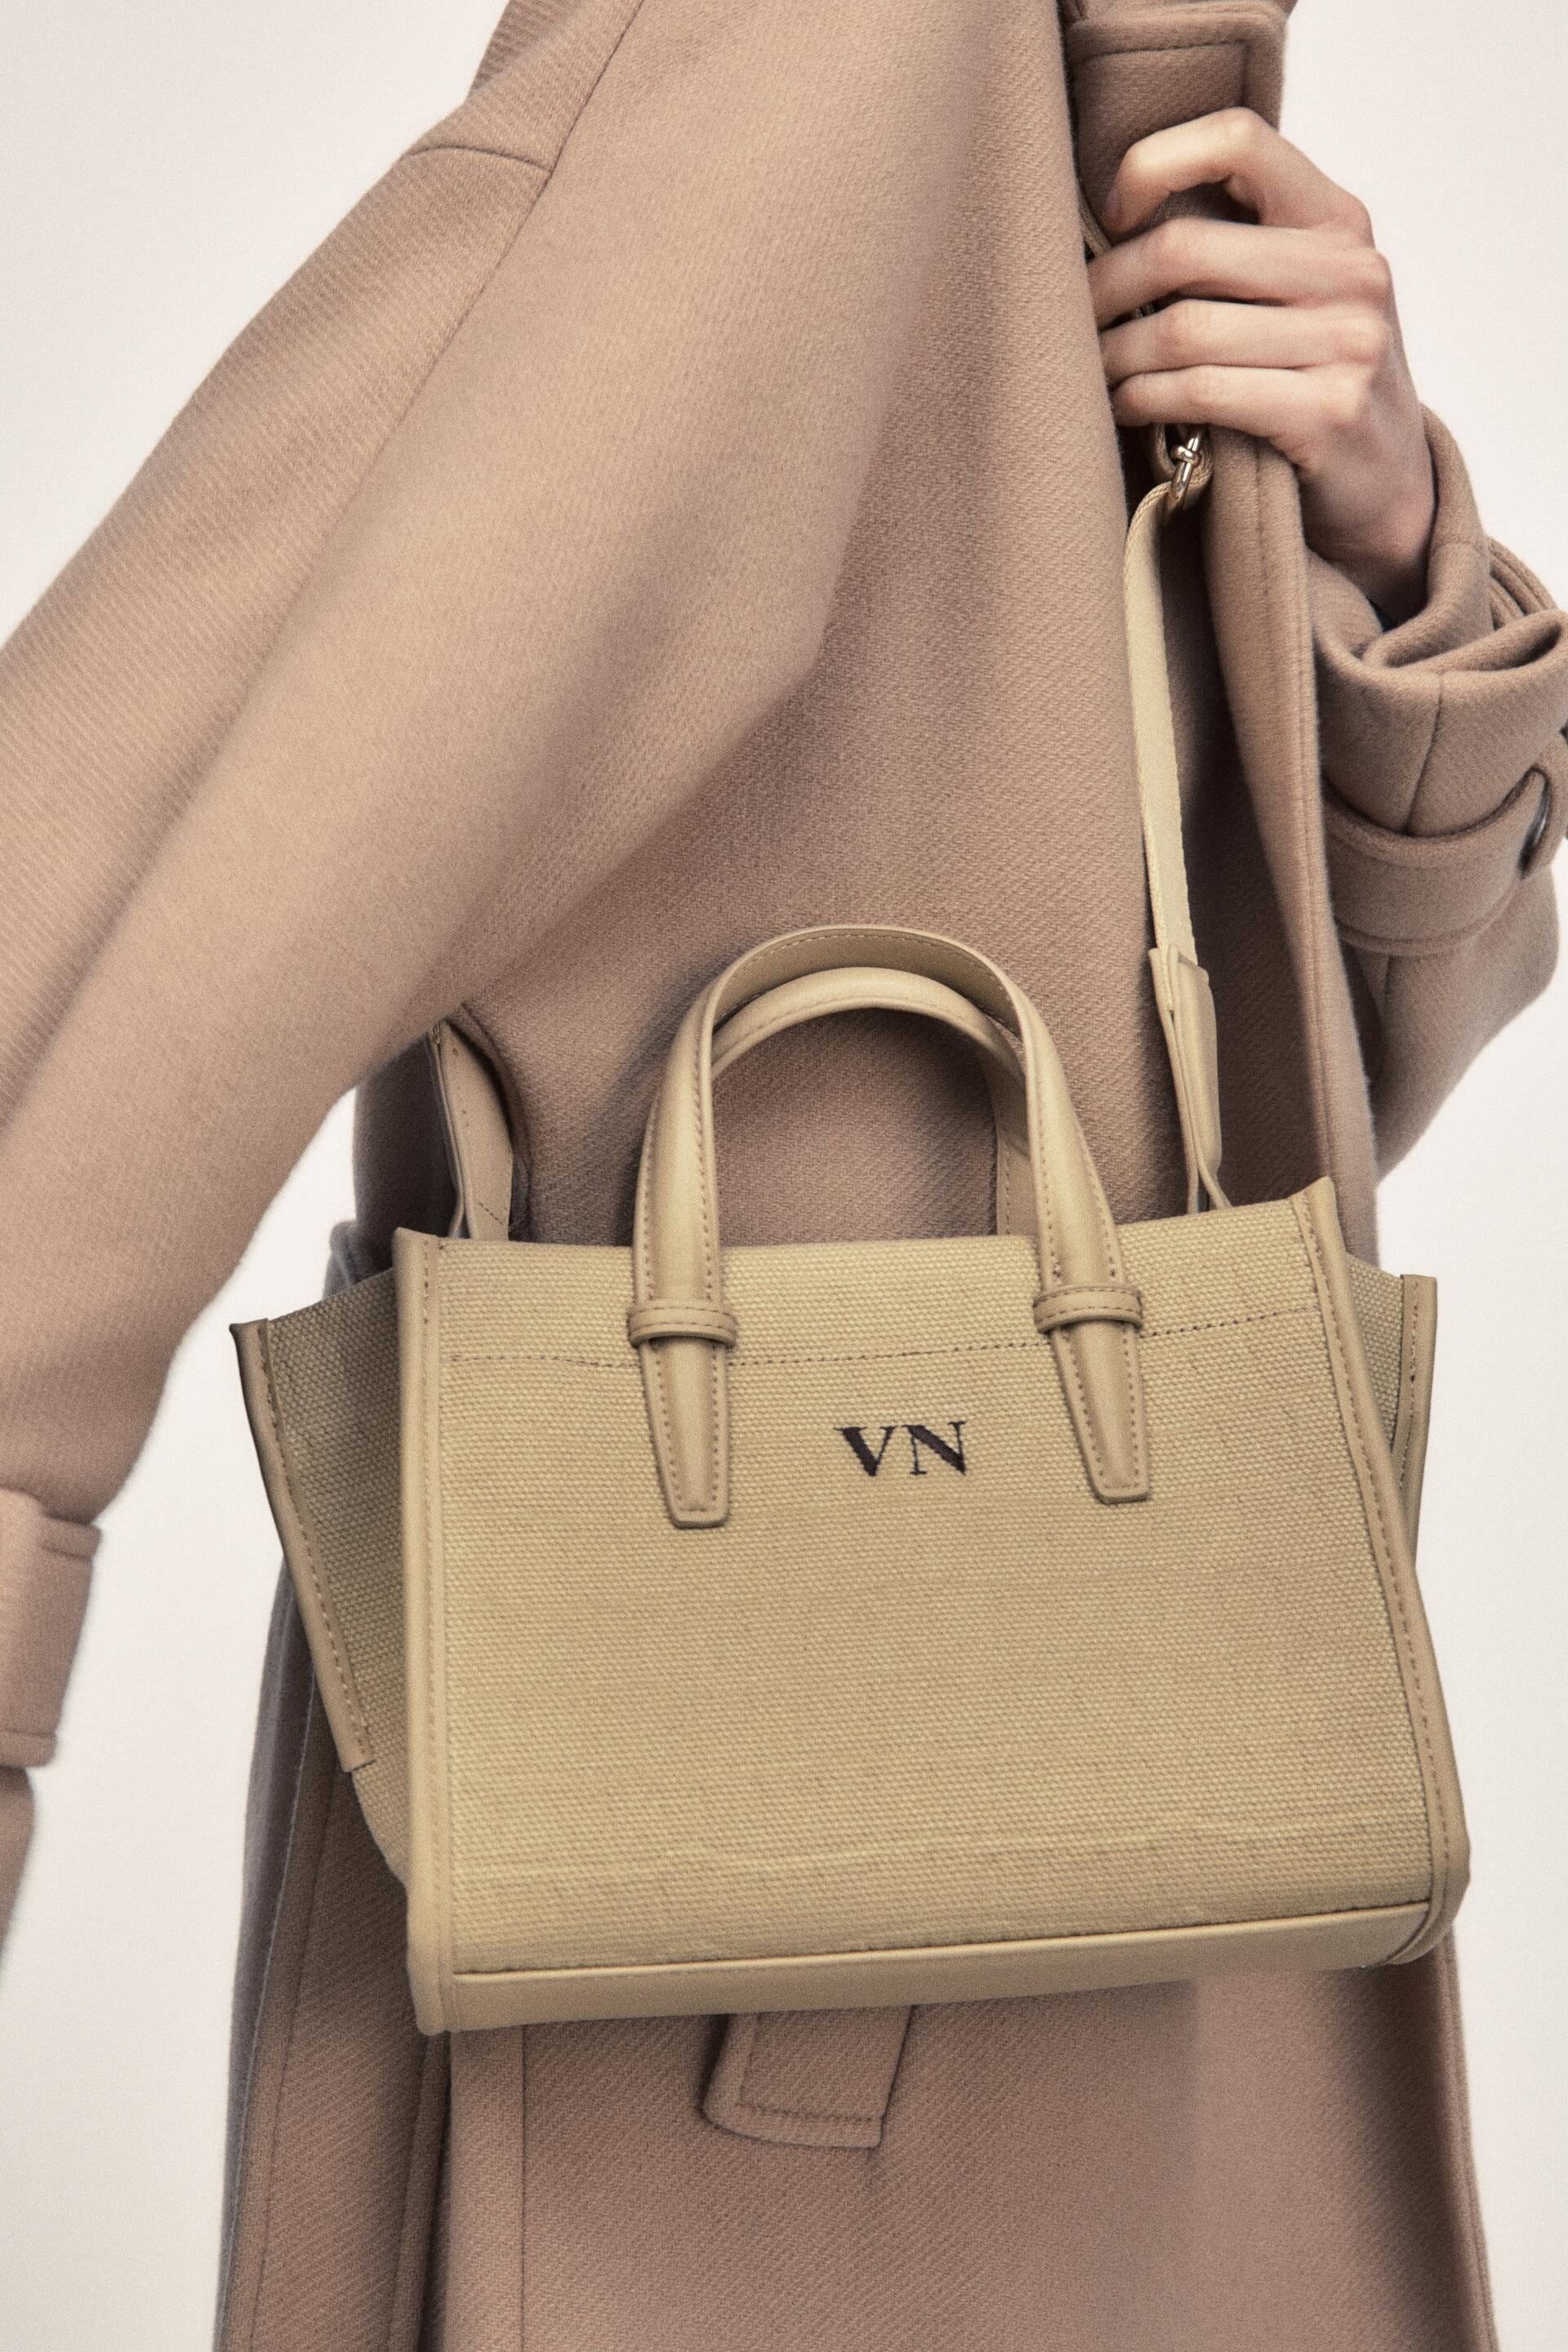 Dispuesto canto agradable El bolso shopper clásico de Zara personalizable con iniciales